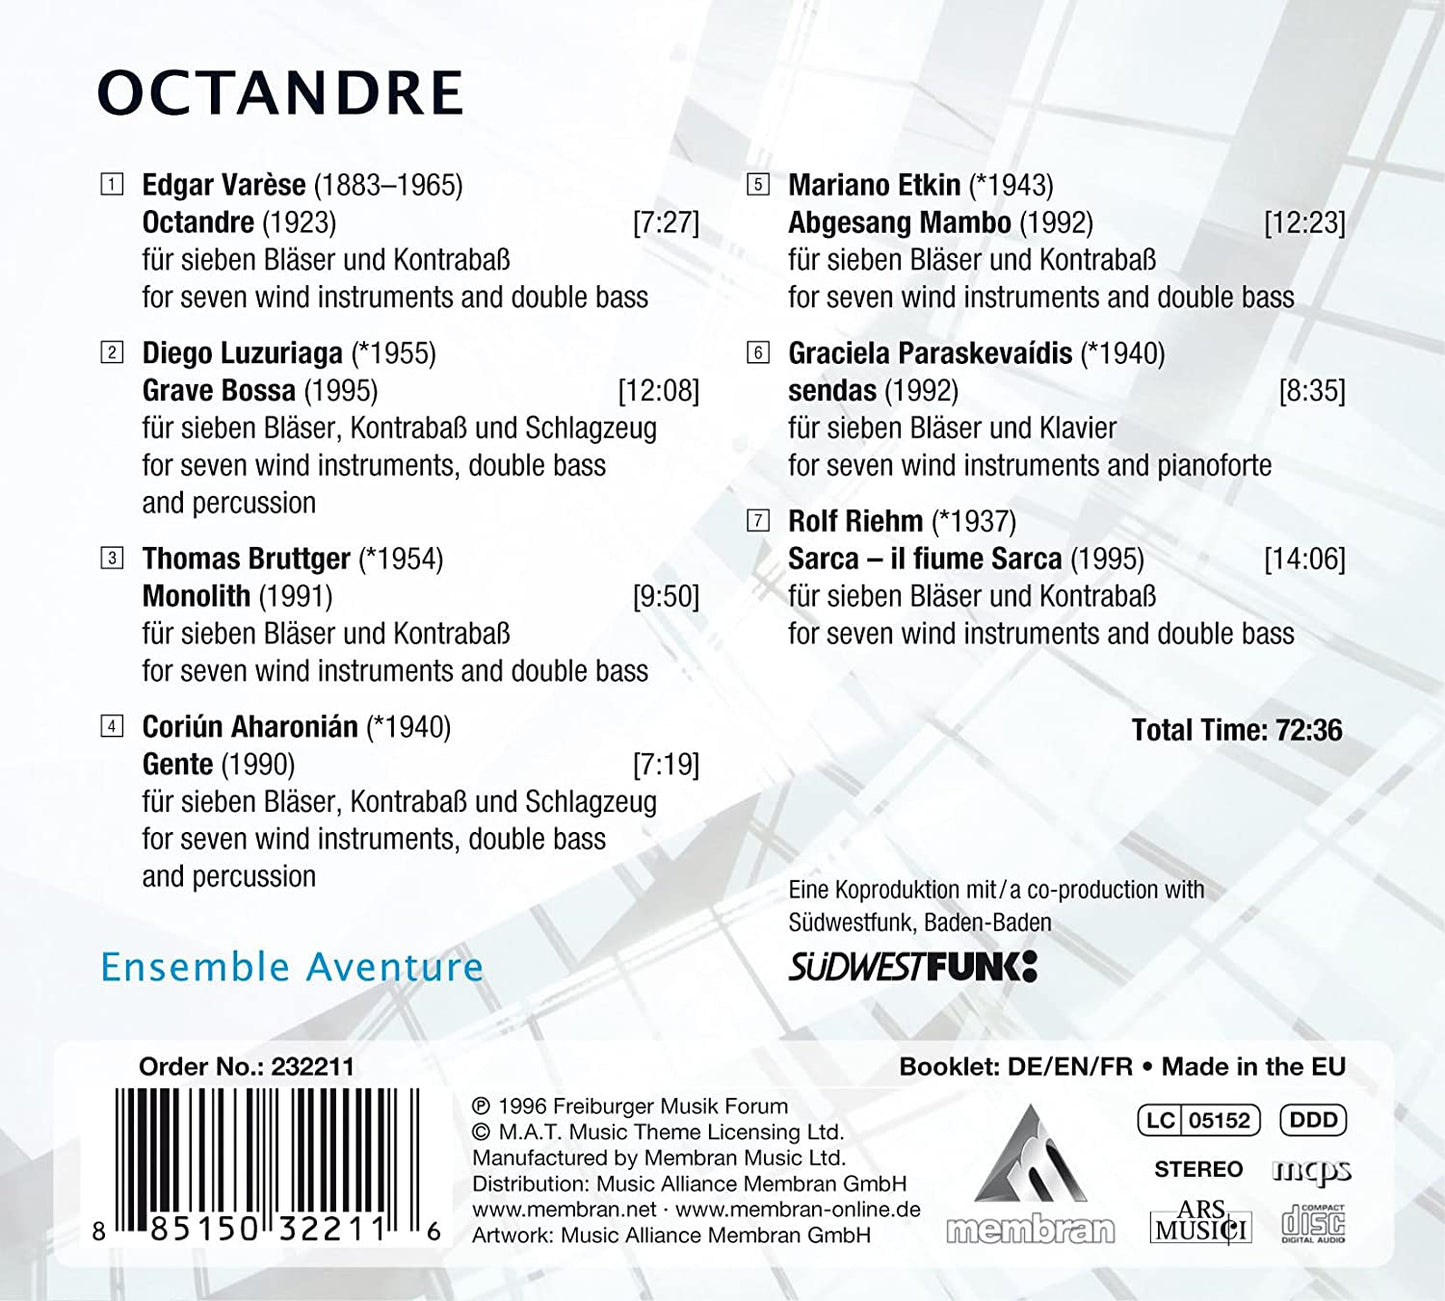 OCTANDRE (Modern Works for Wind Ensemble): Ensemble Aventure